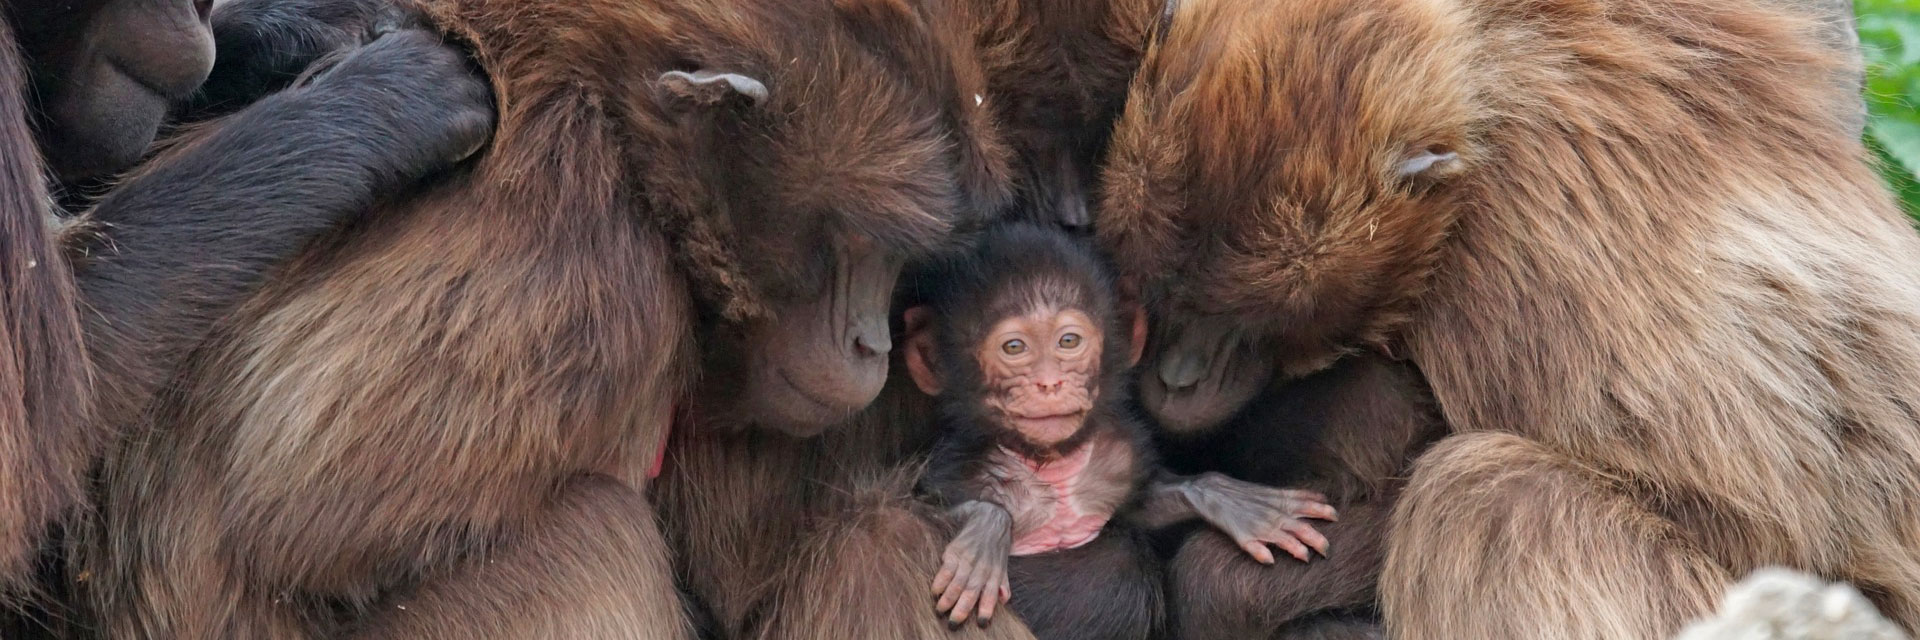 monkeys hugging a baby monkey (cute!)